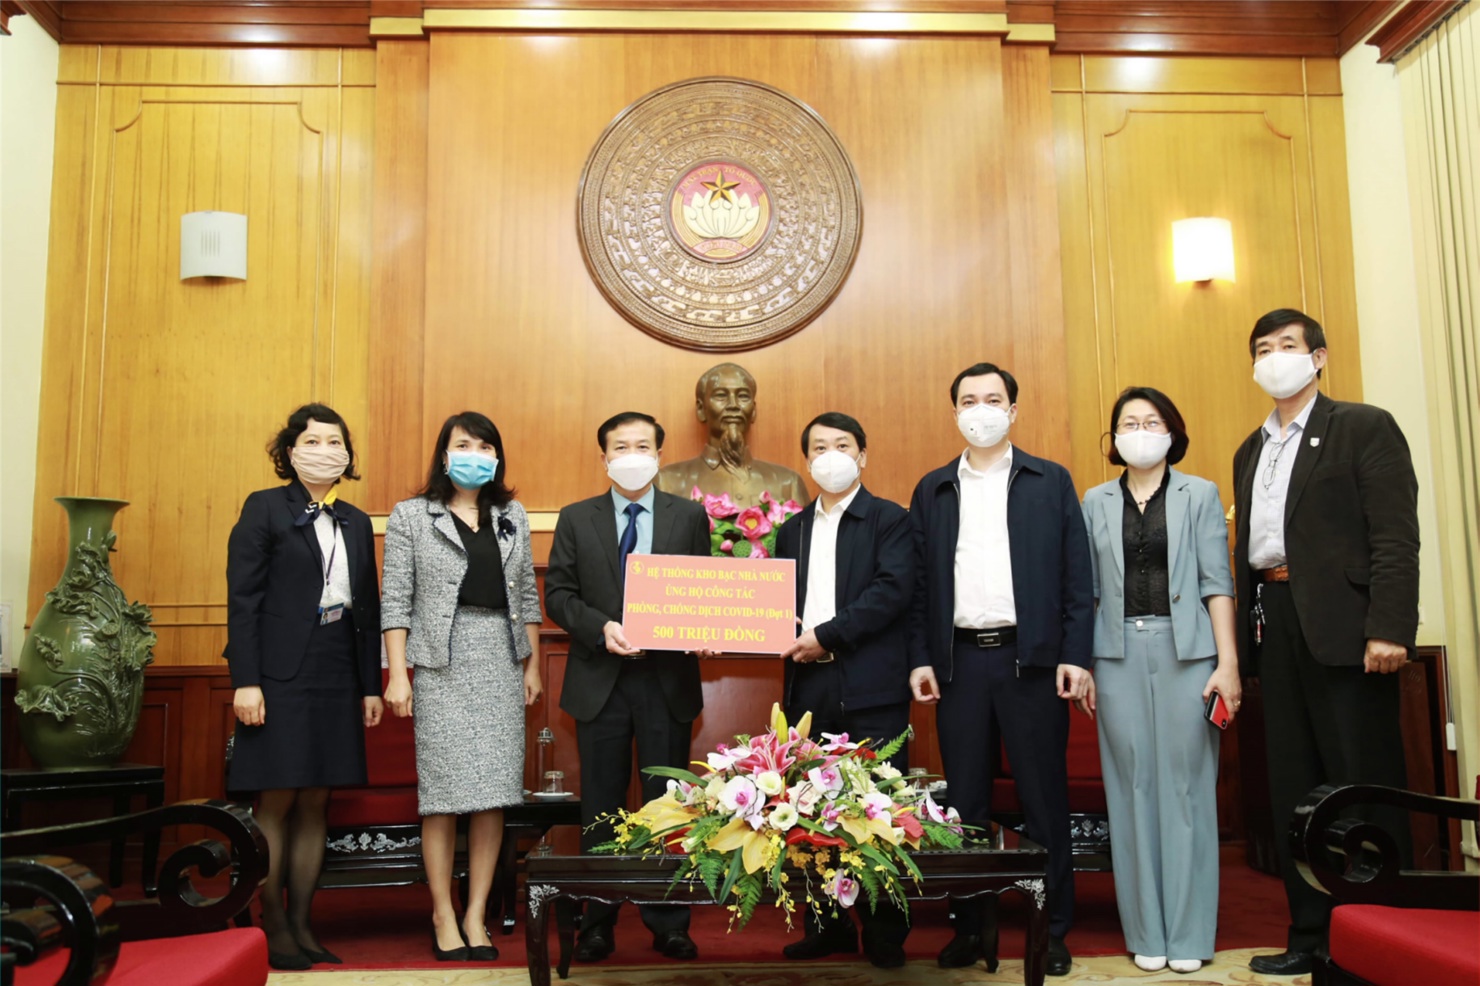 Đại diện cho hơn 14 nghìn cán bộ, công chức hệ thống KBNN, Phó Tổng Giám đốc - Nguyễn Quang Vinh trao tặng số tiền ủng hộ đợt 1 cho đại diện Uỷ ban Trung ương MTTQ Việt Nam